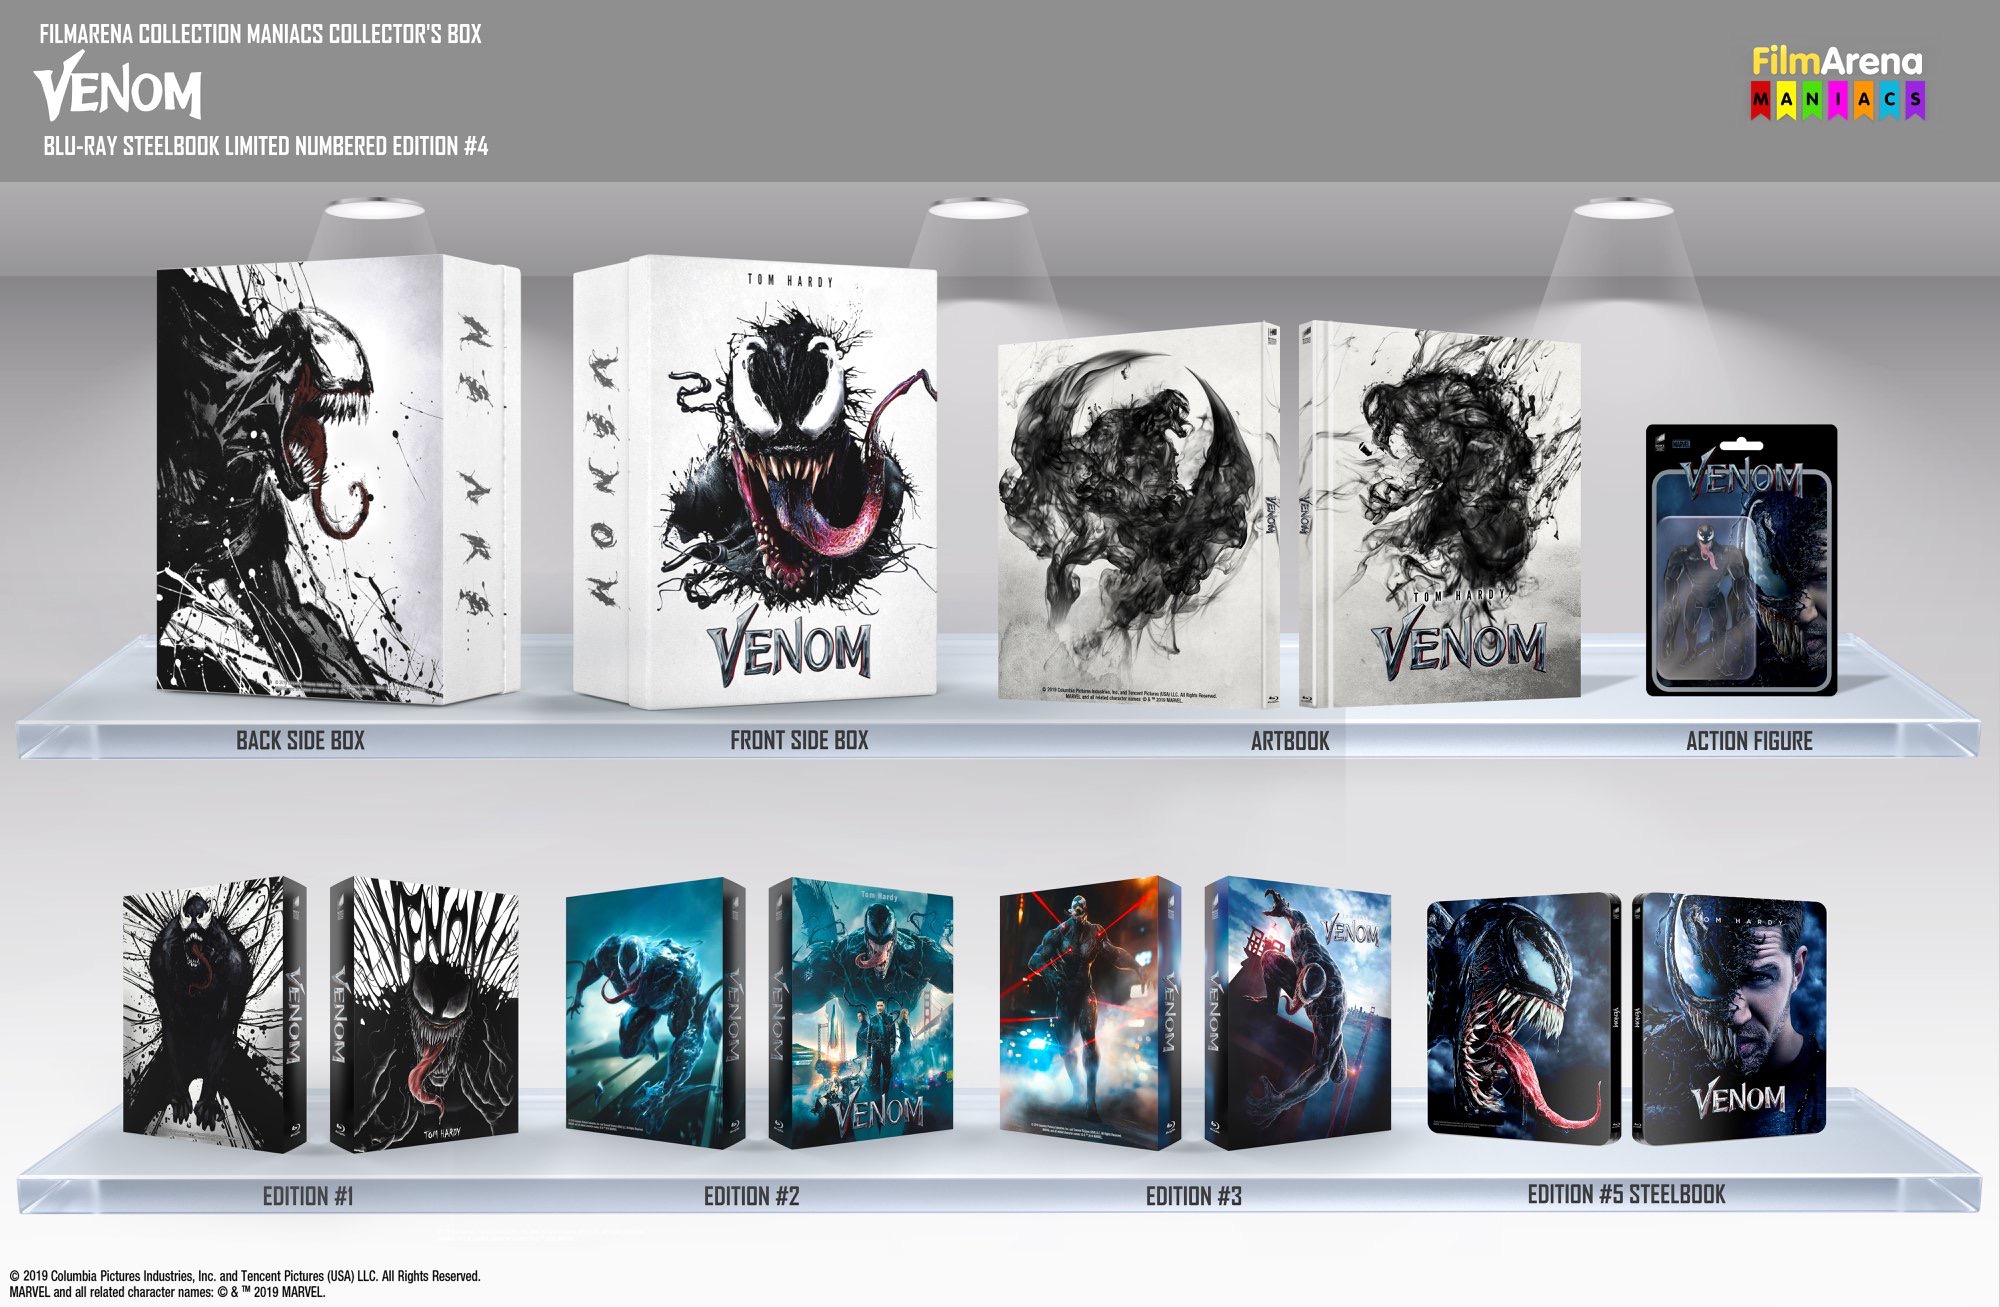 Venom (4K+3D+2D and 3D+2D Blu-ray SteelBooks) (FilmArena 